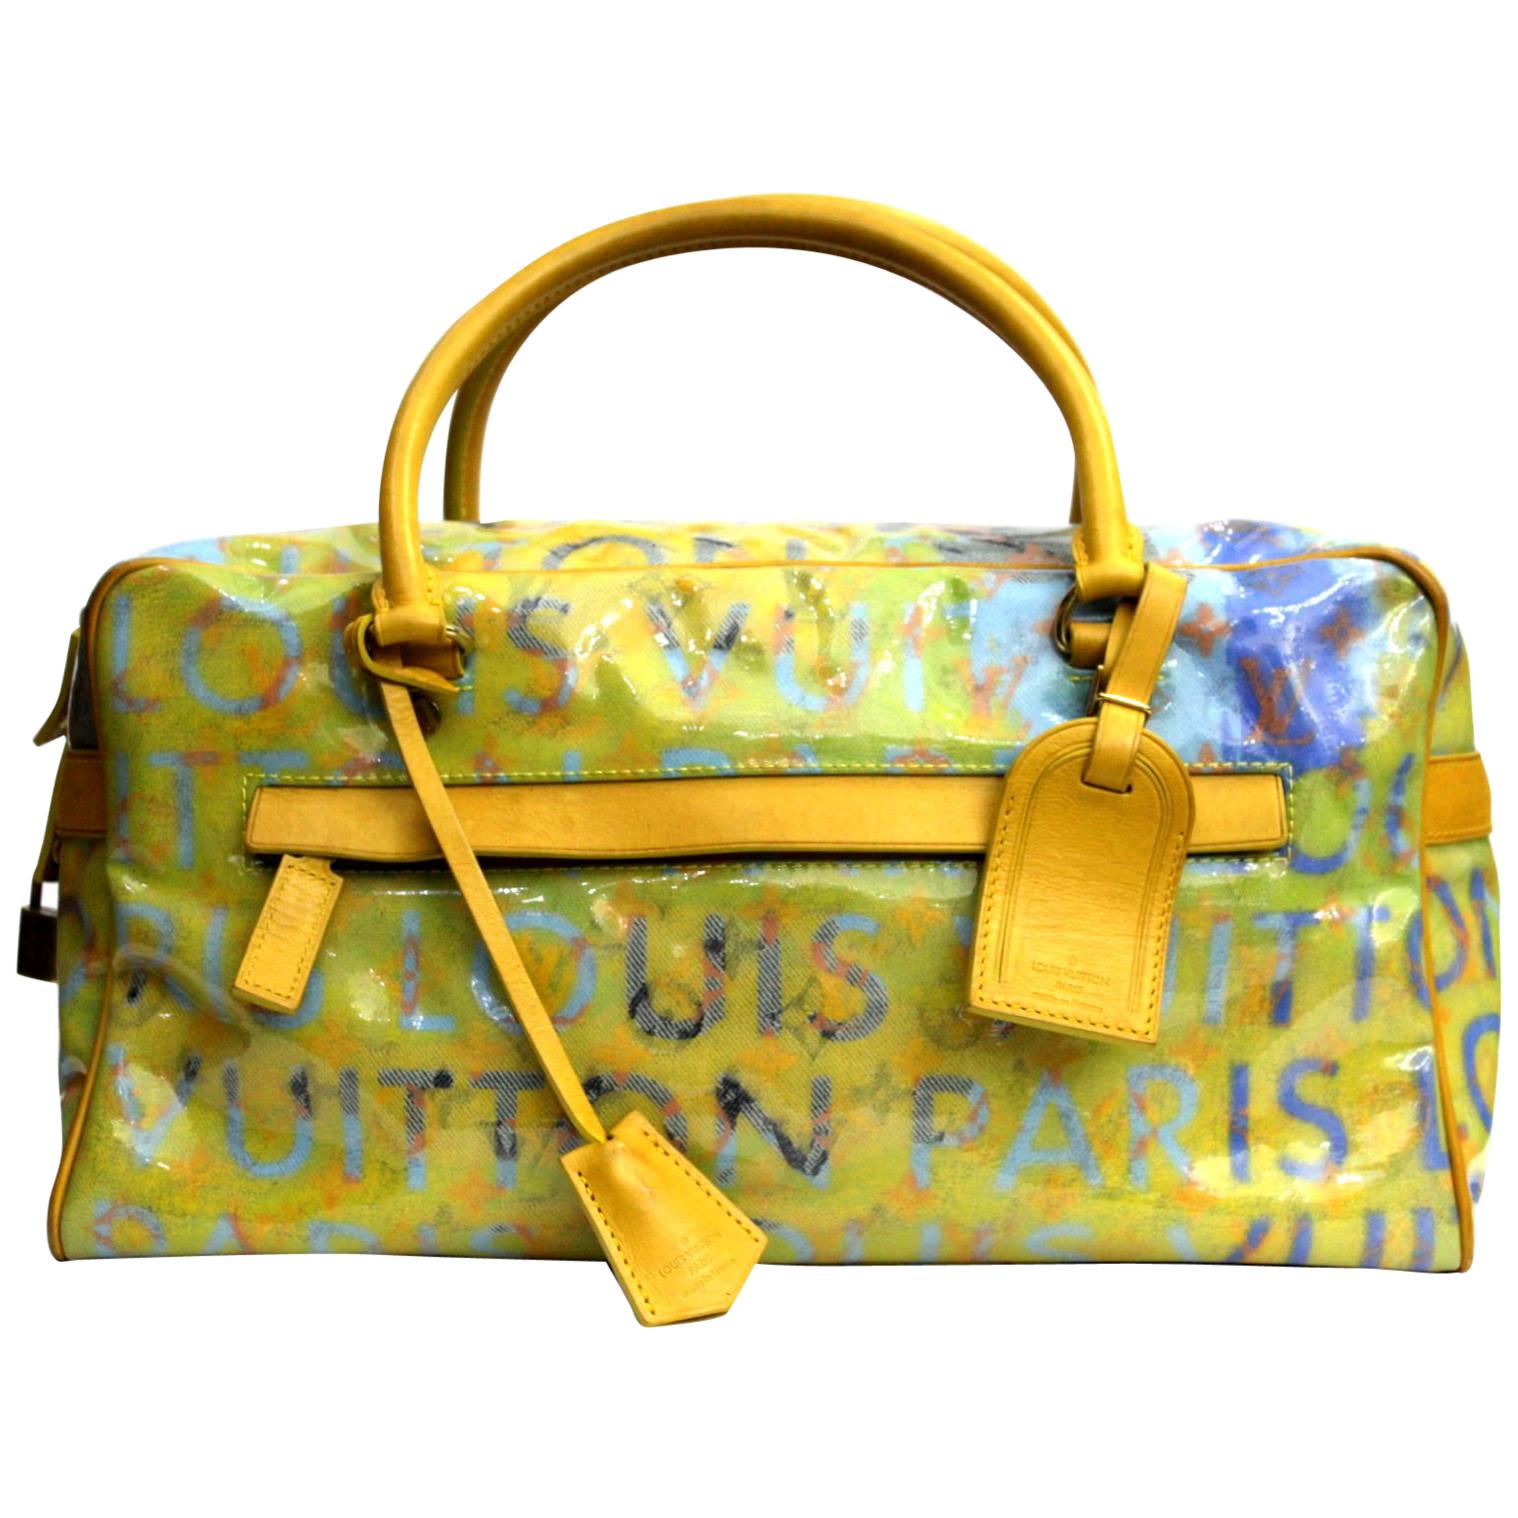 Buy Louis Vuitton Travel Richard Prince Pink Denim Weekender Pm Bag Luggage